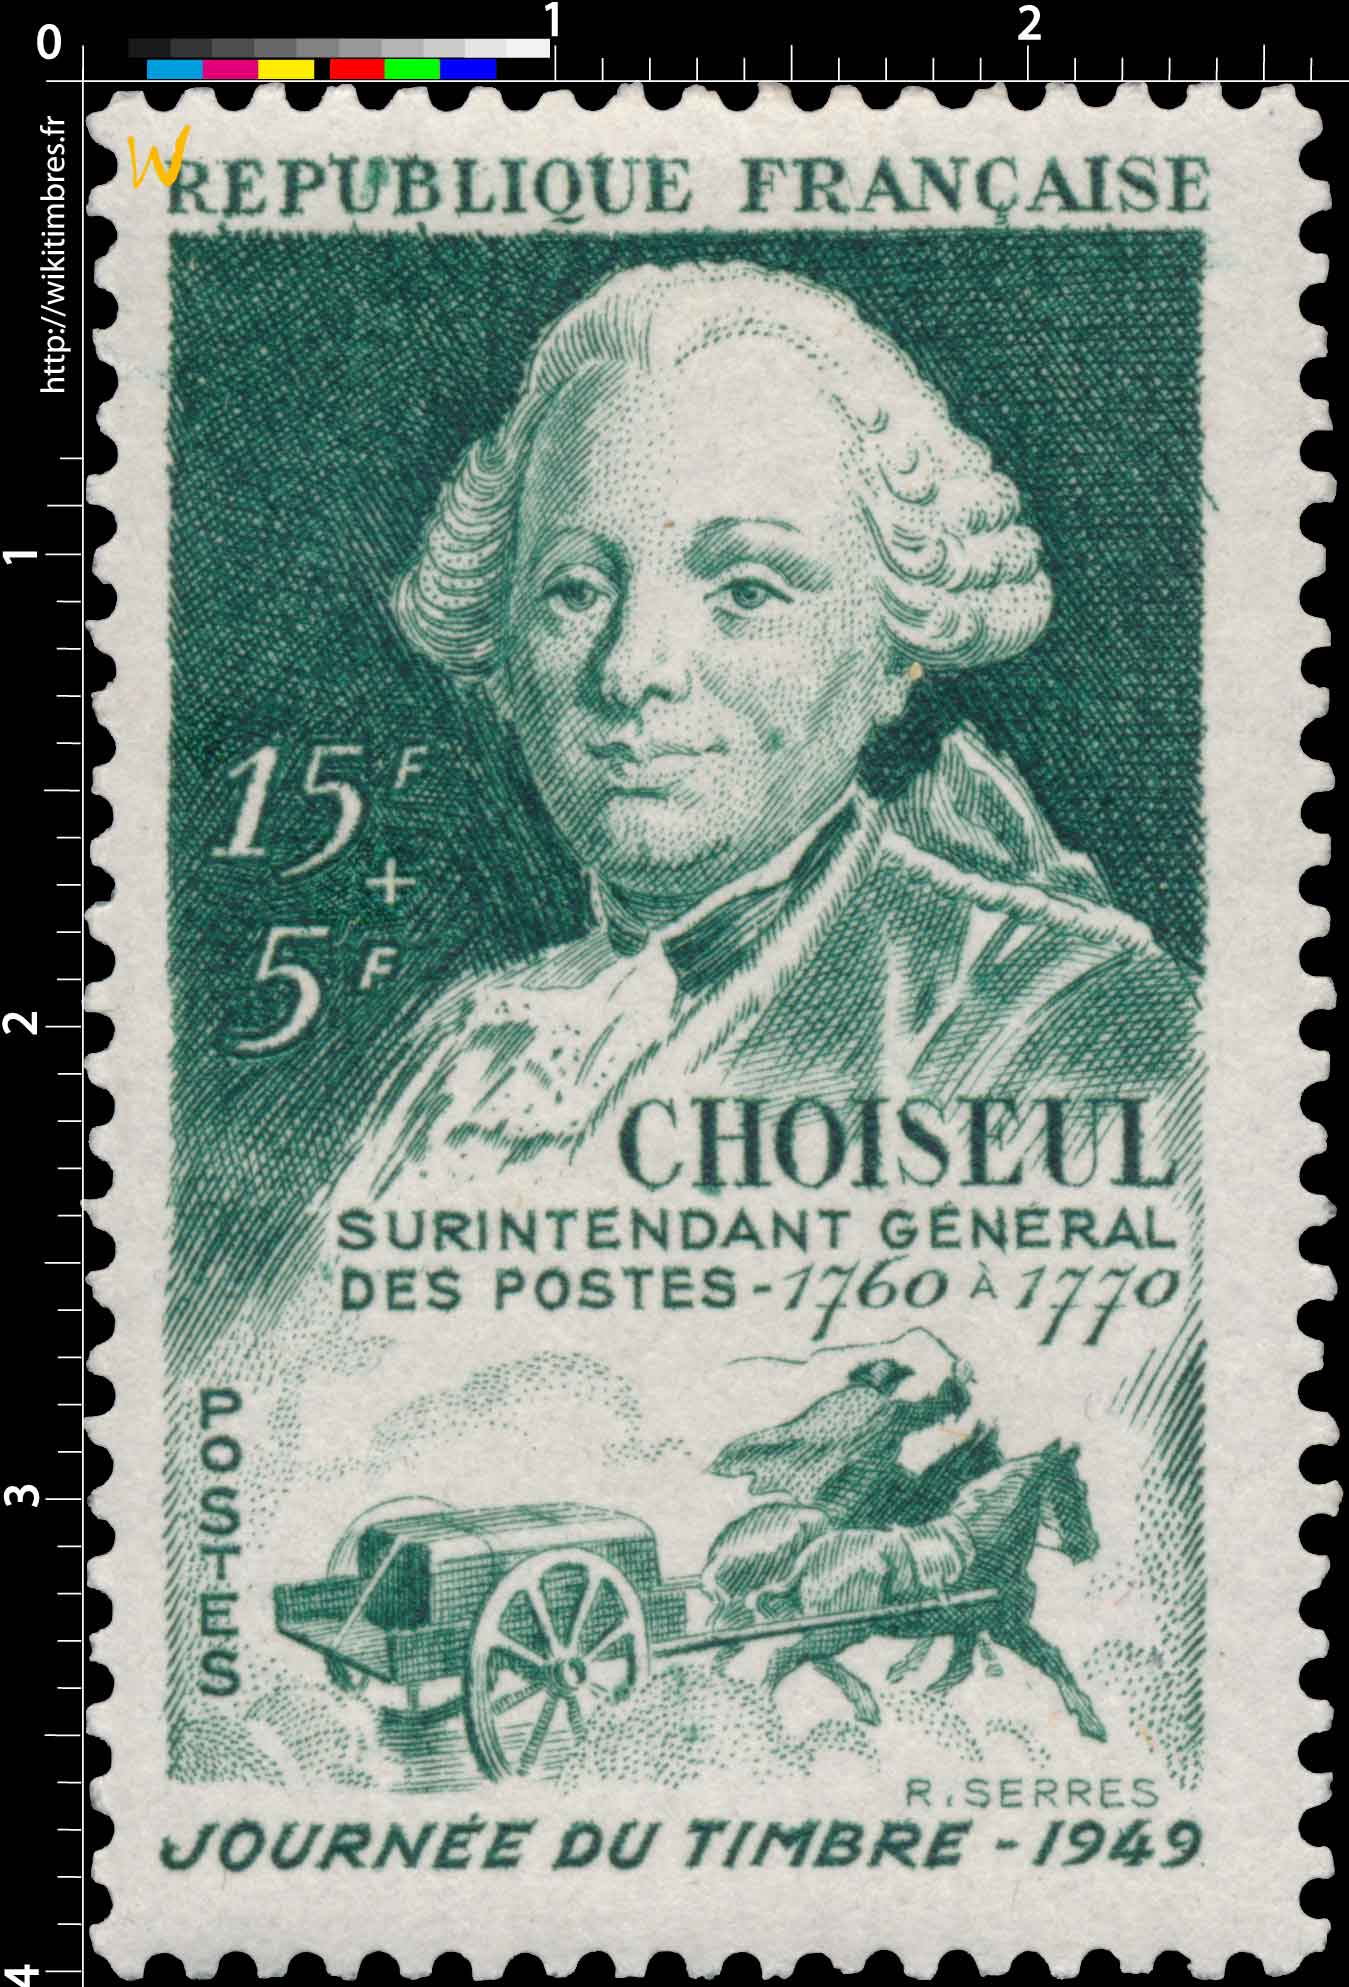 CHOISEUL SURINTENDANT GÉNÉRAL DES POSTES - 1760 à 1770 JOURNÉE DU TIMBRE - 1949